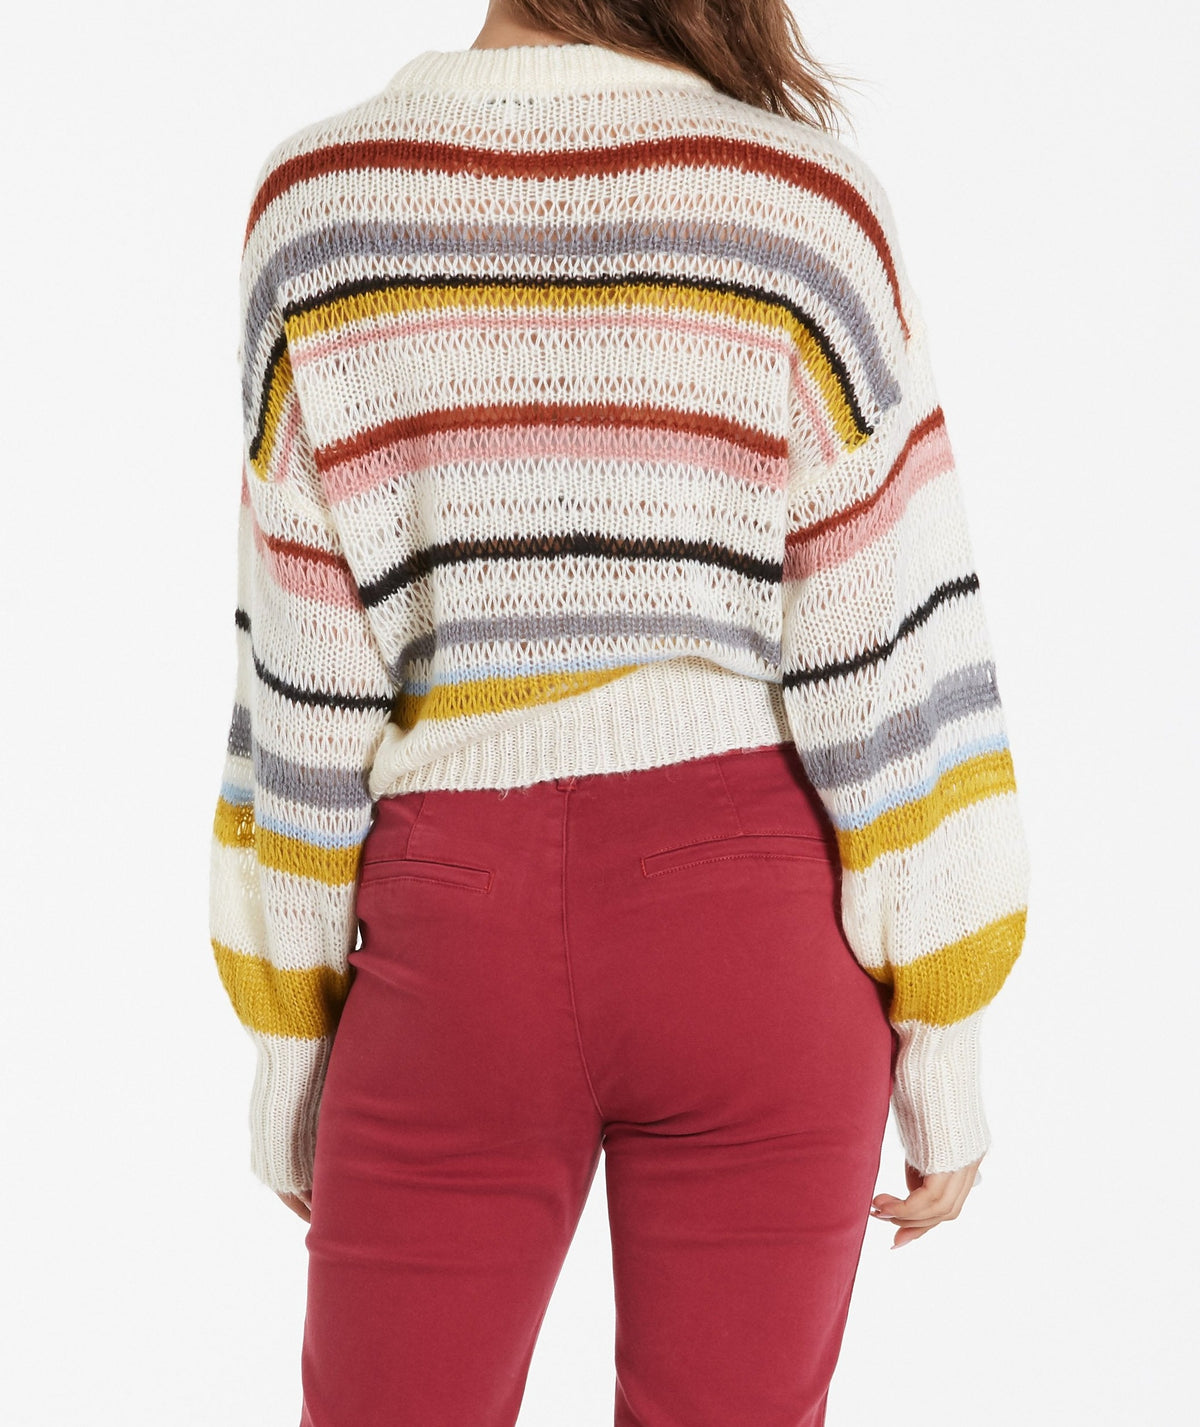 AVIANNA sweater in beige multi stripe